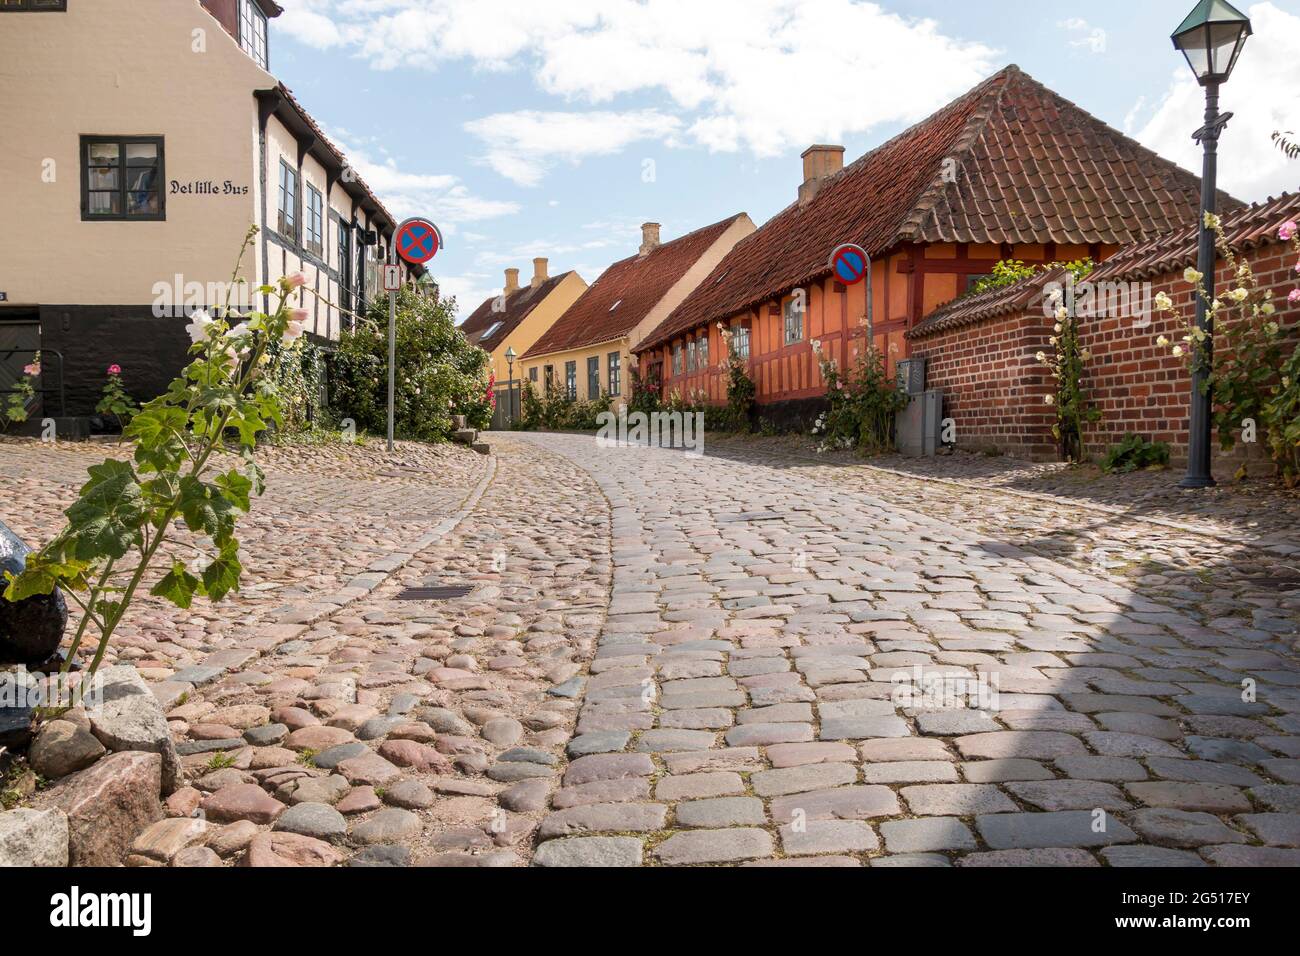 Ebeltoft, Danemark - 20 juillet 2020 : vieille rue aux pavés, maisons anciennes Banque D'Images